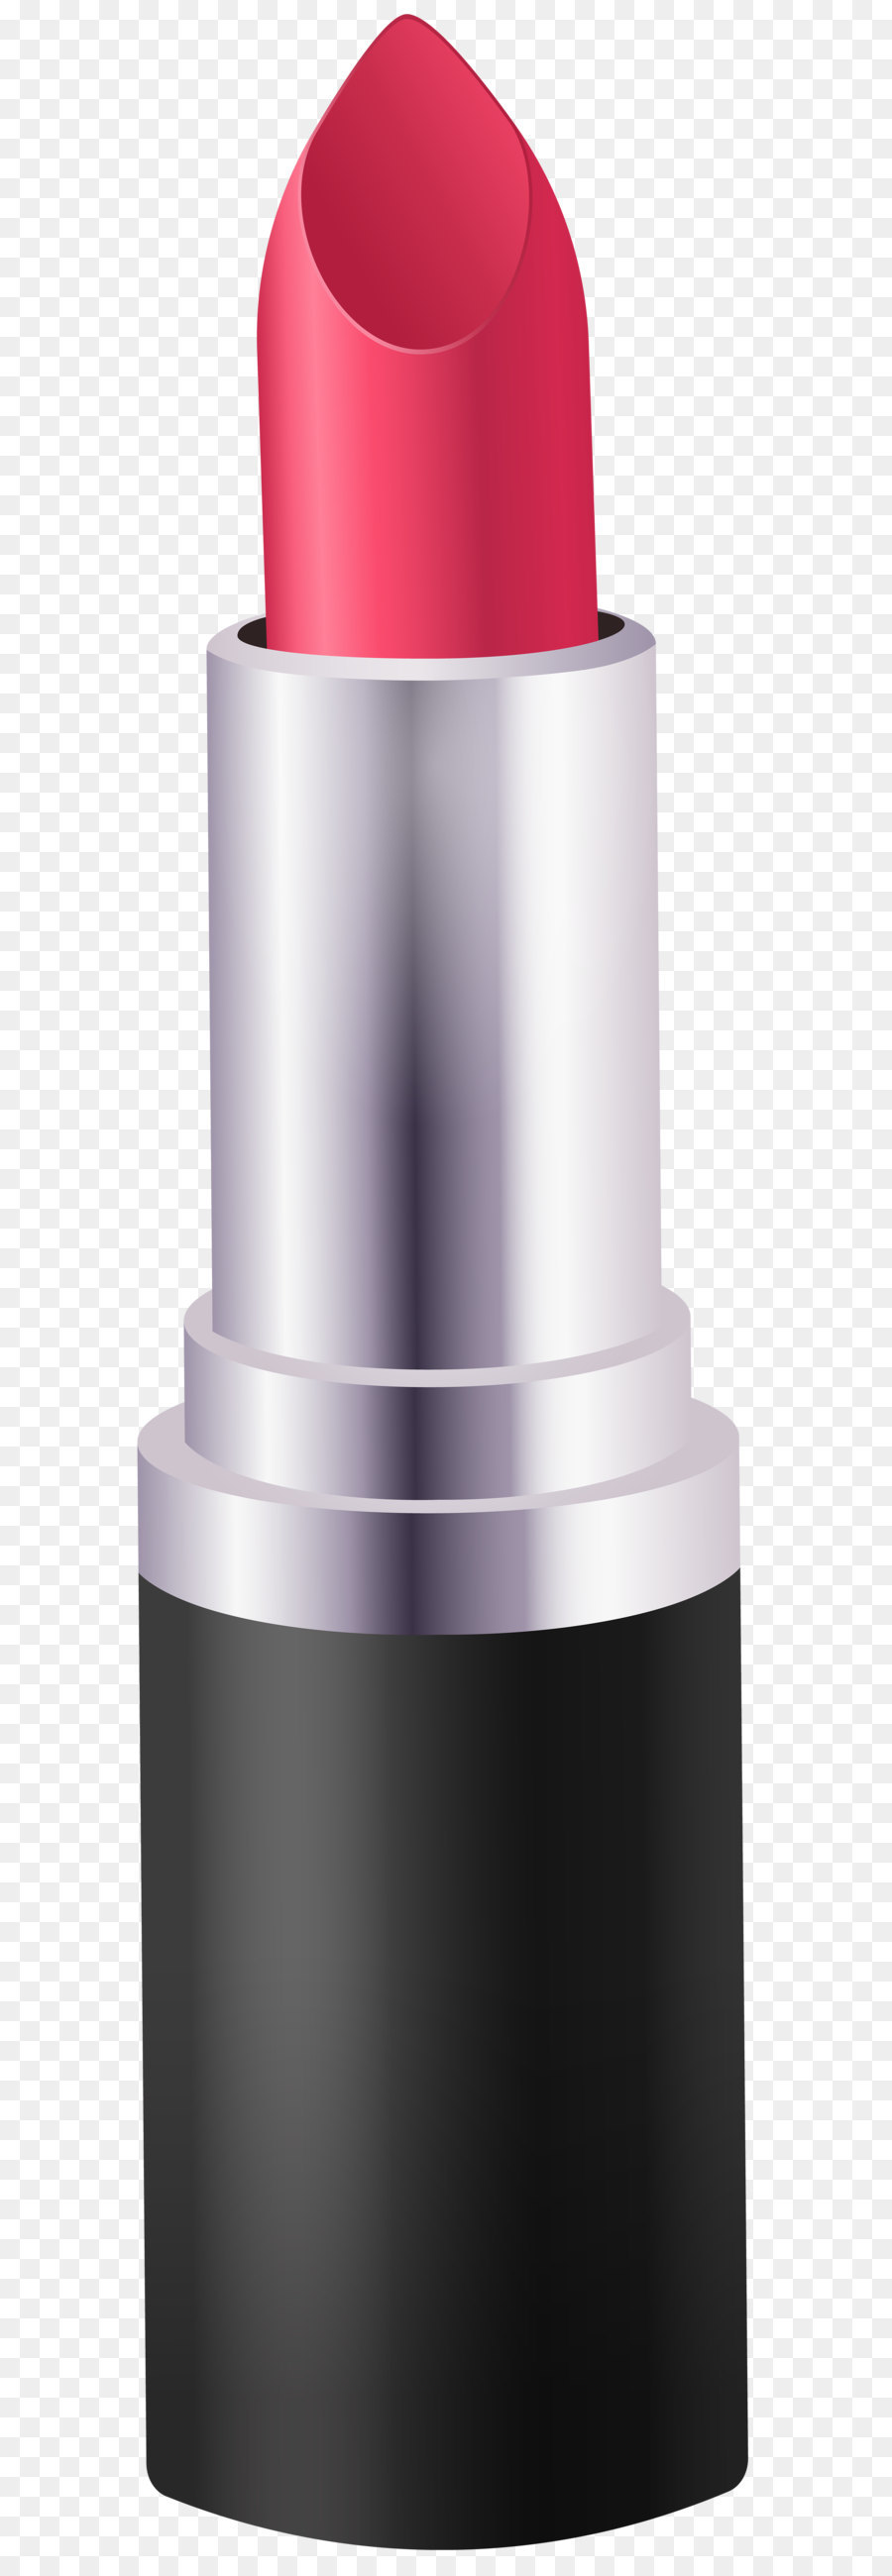 MAC Cosmetics Lippenstift, Sonnencreme, Lidschatten - Lippenstift PNG clipart